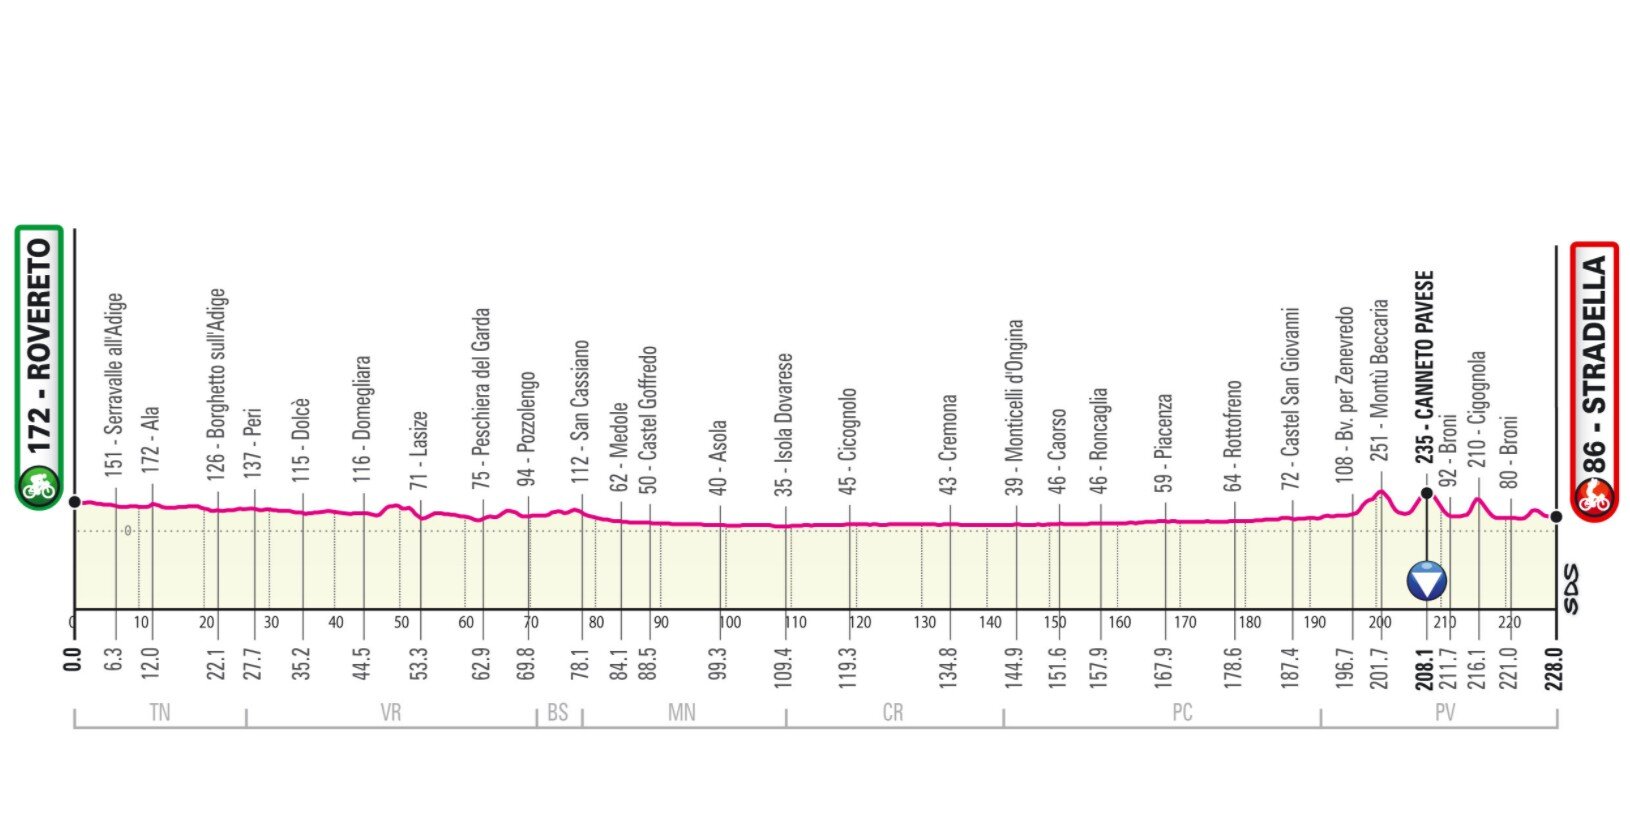 Étape 18 Giro Italia 2021